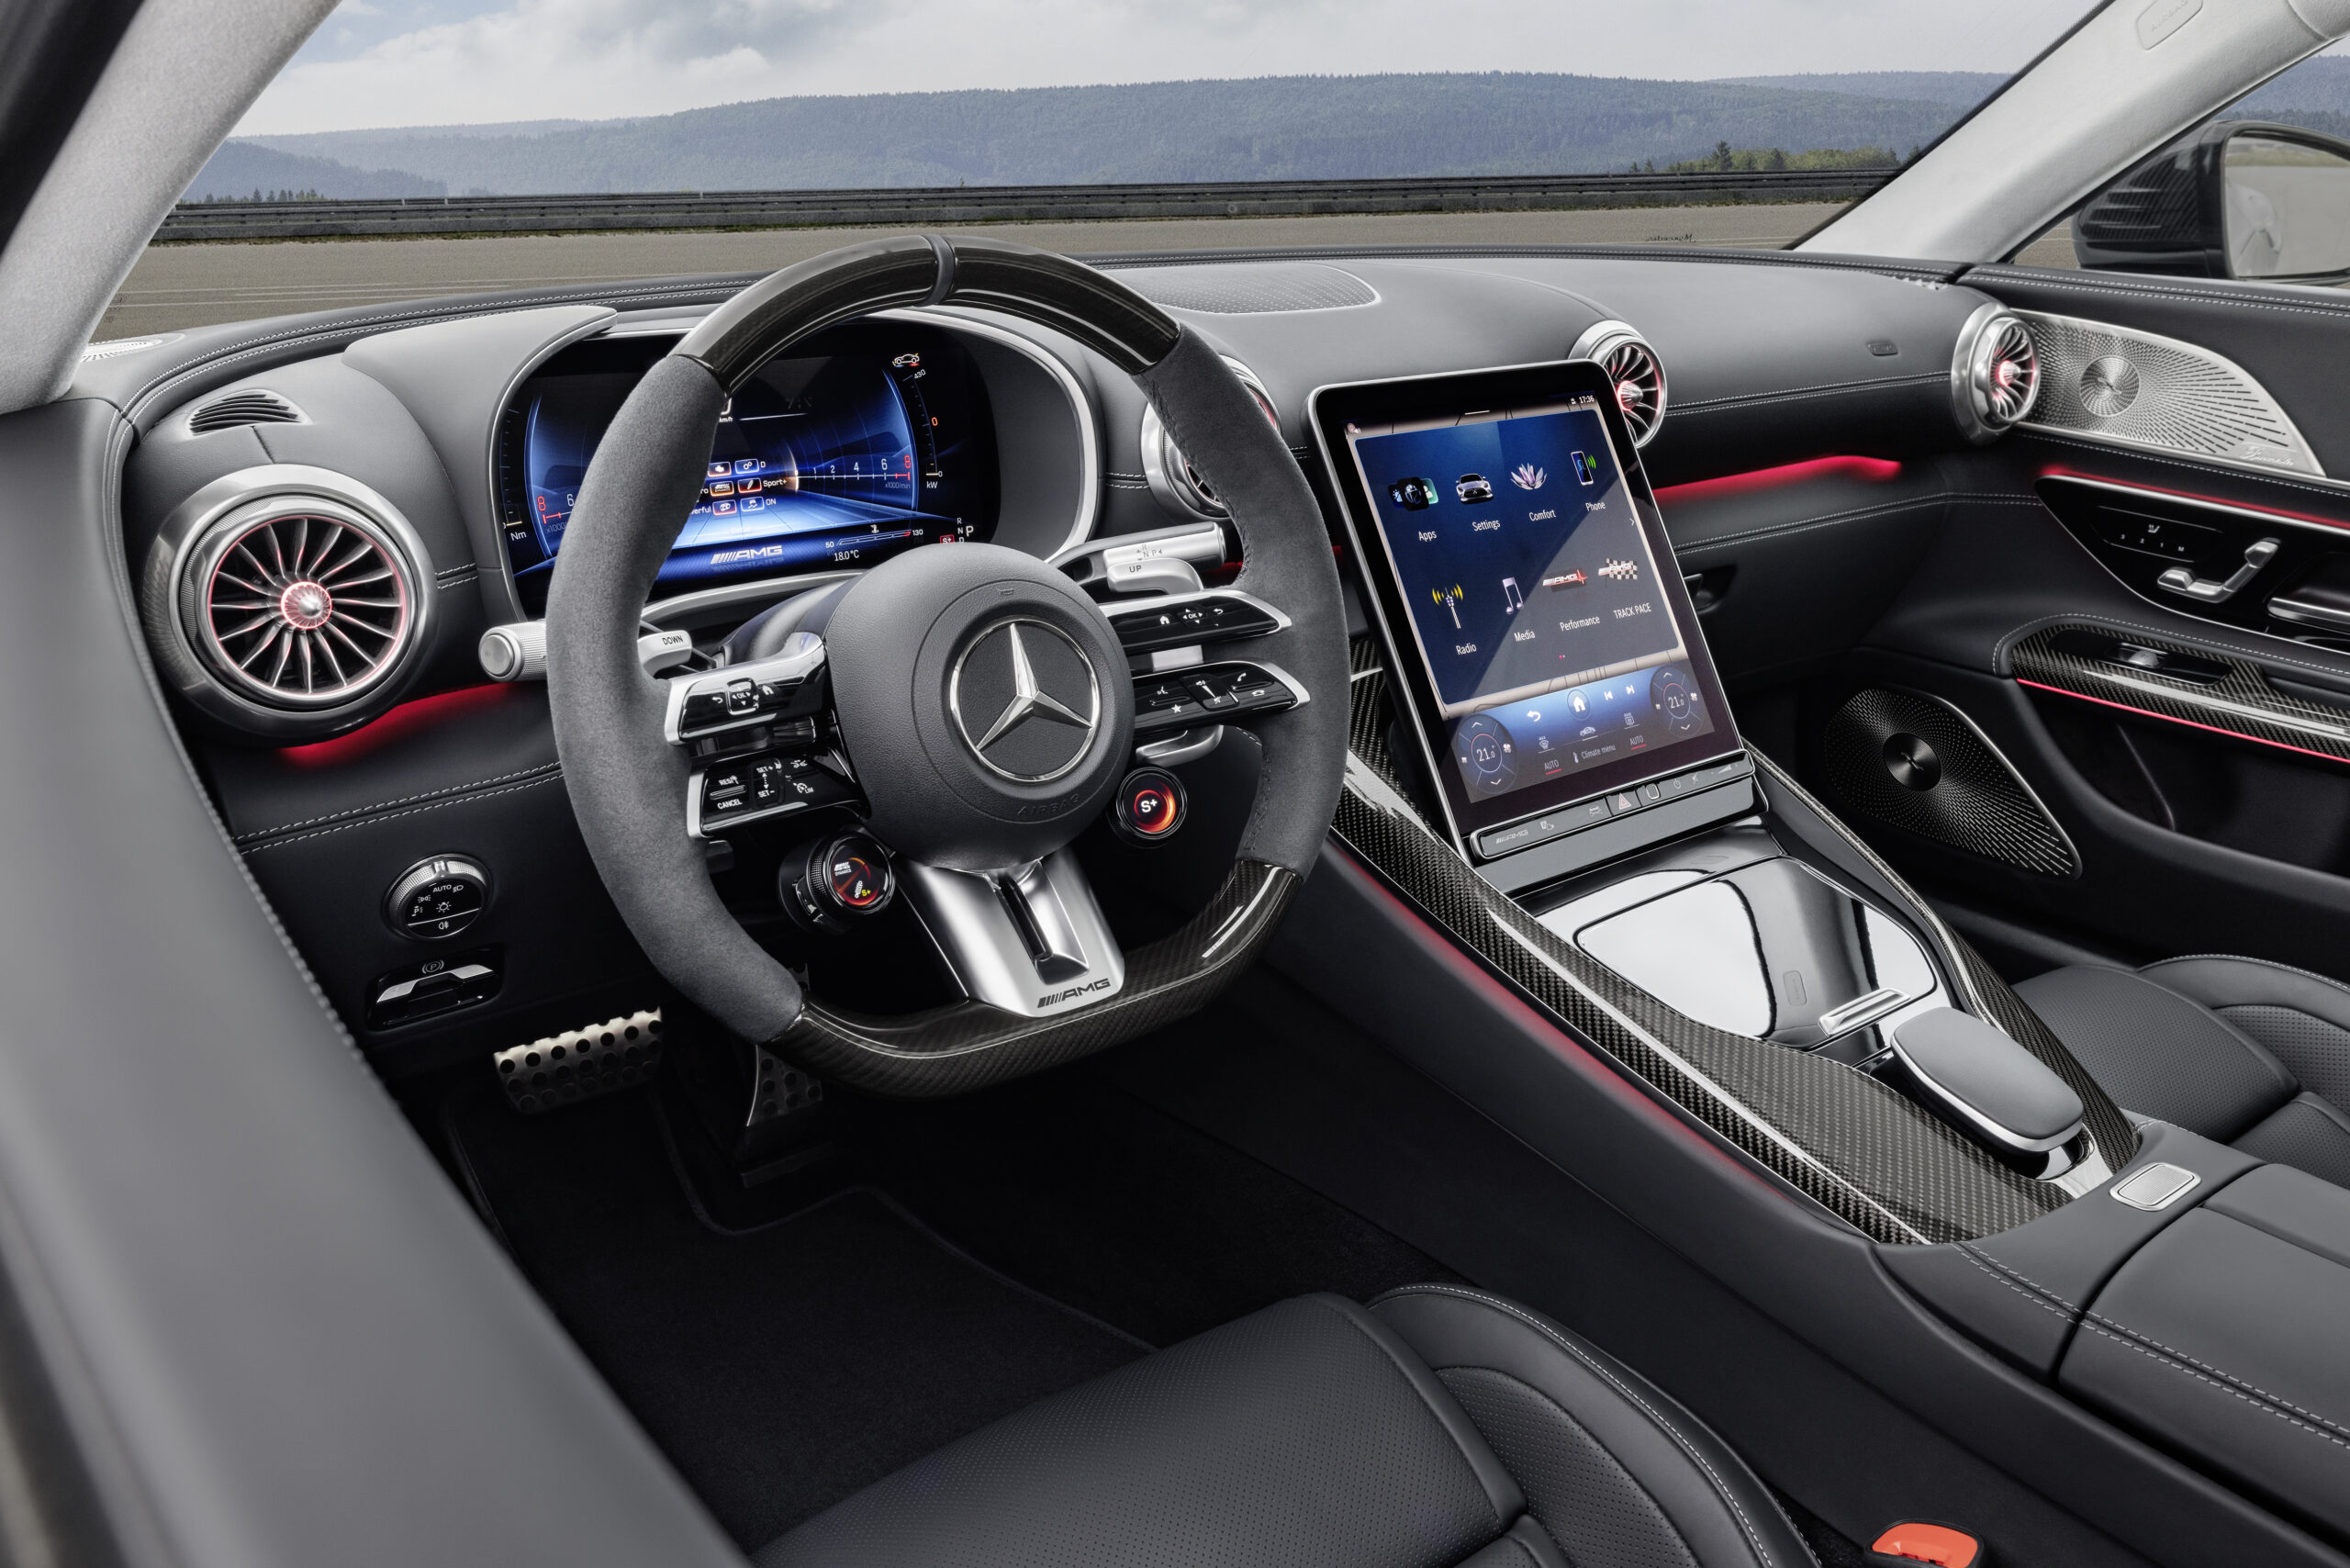 Yeni Mercedes-AMG GT Coupe, dikkat çeken tasarımıyla tanıtıldı!